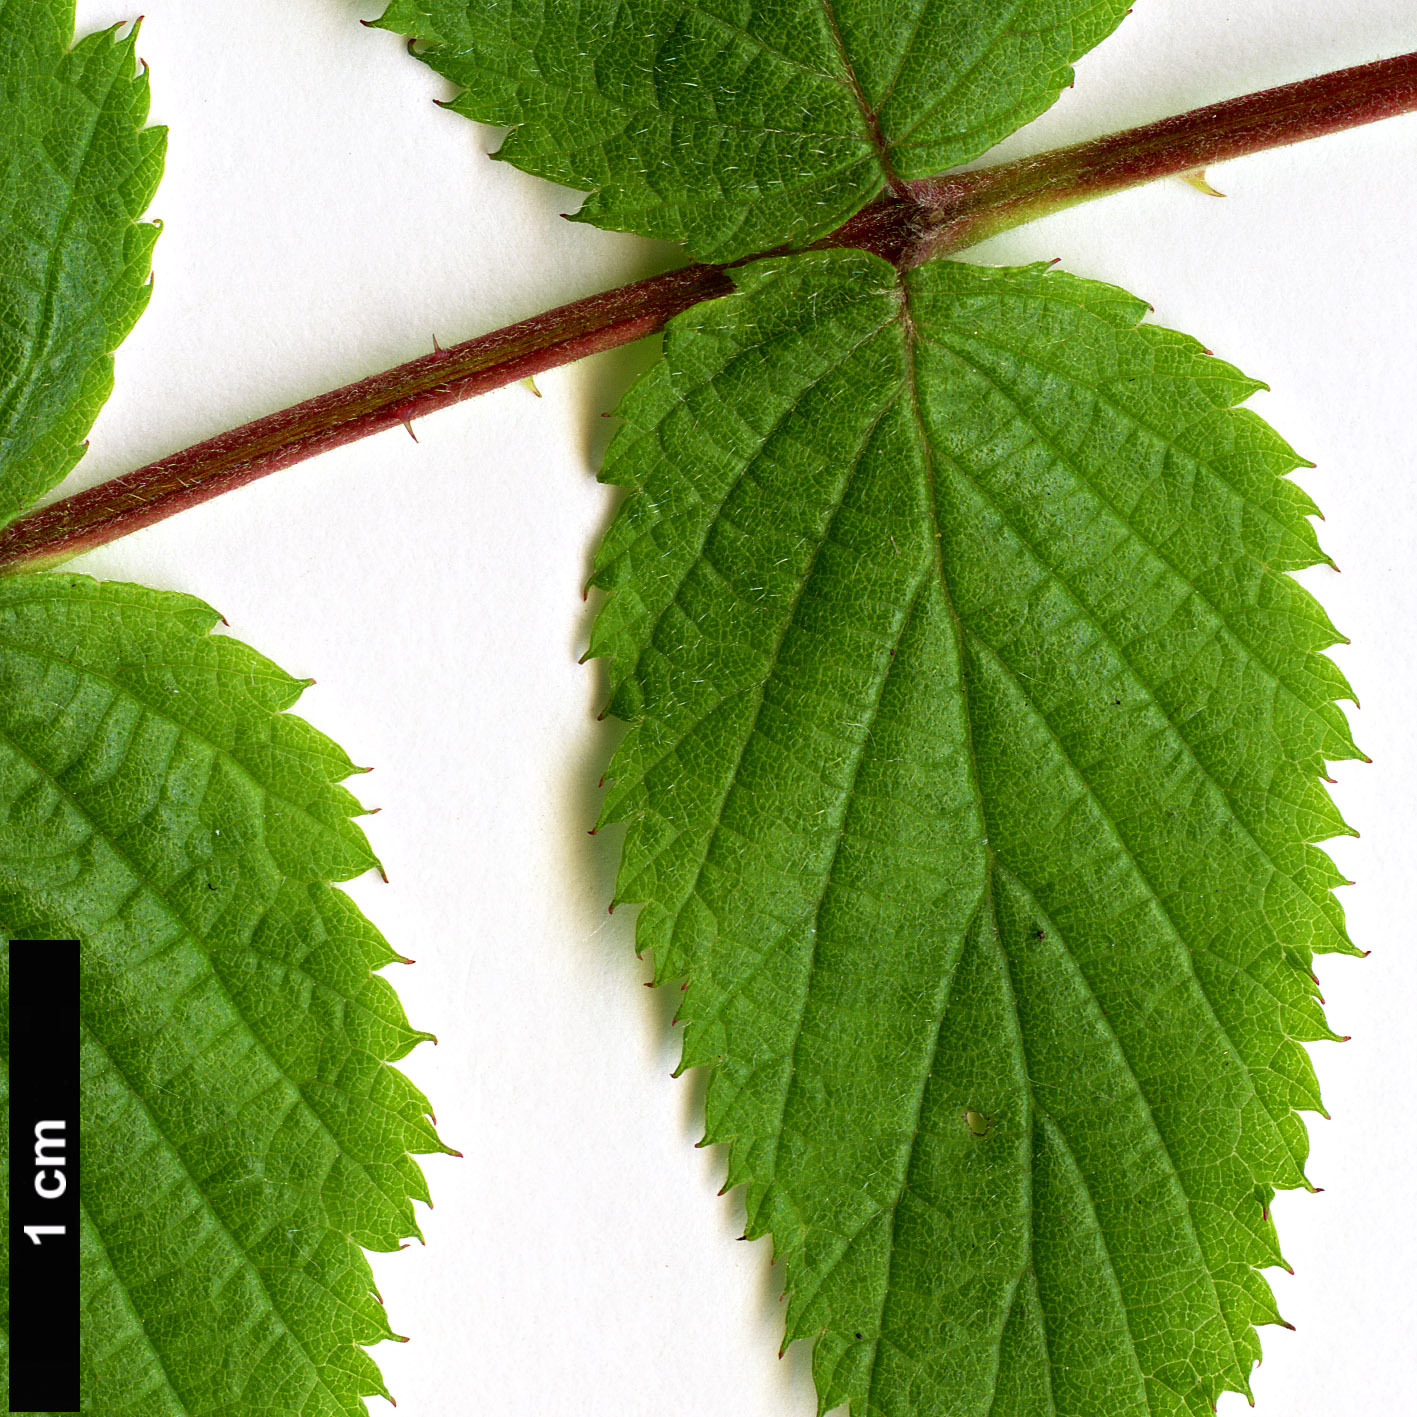 High resolution image: Family: Rosaceae - Genus: Rubus - Taxon: coreanus